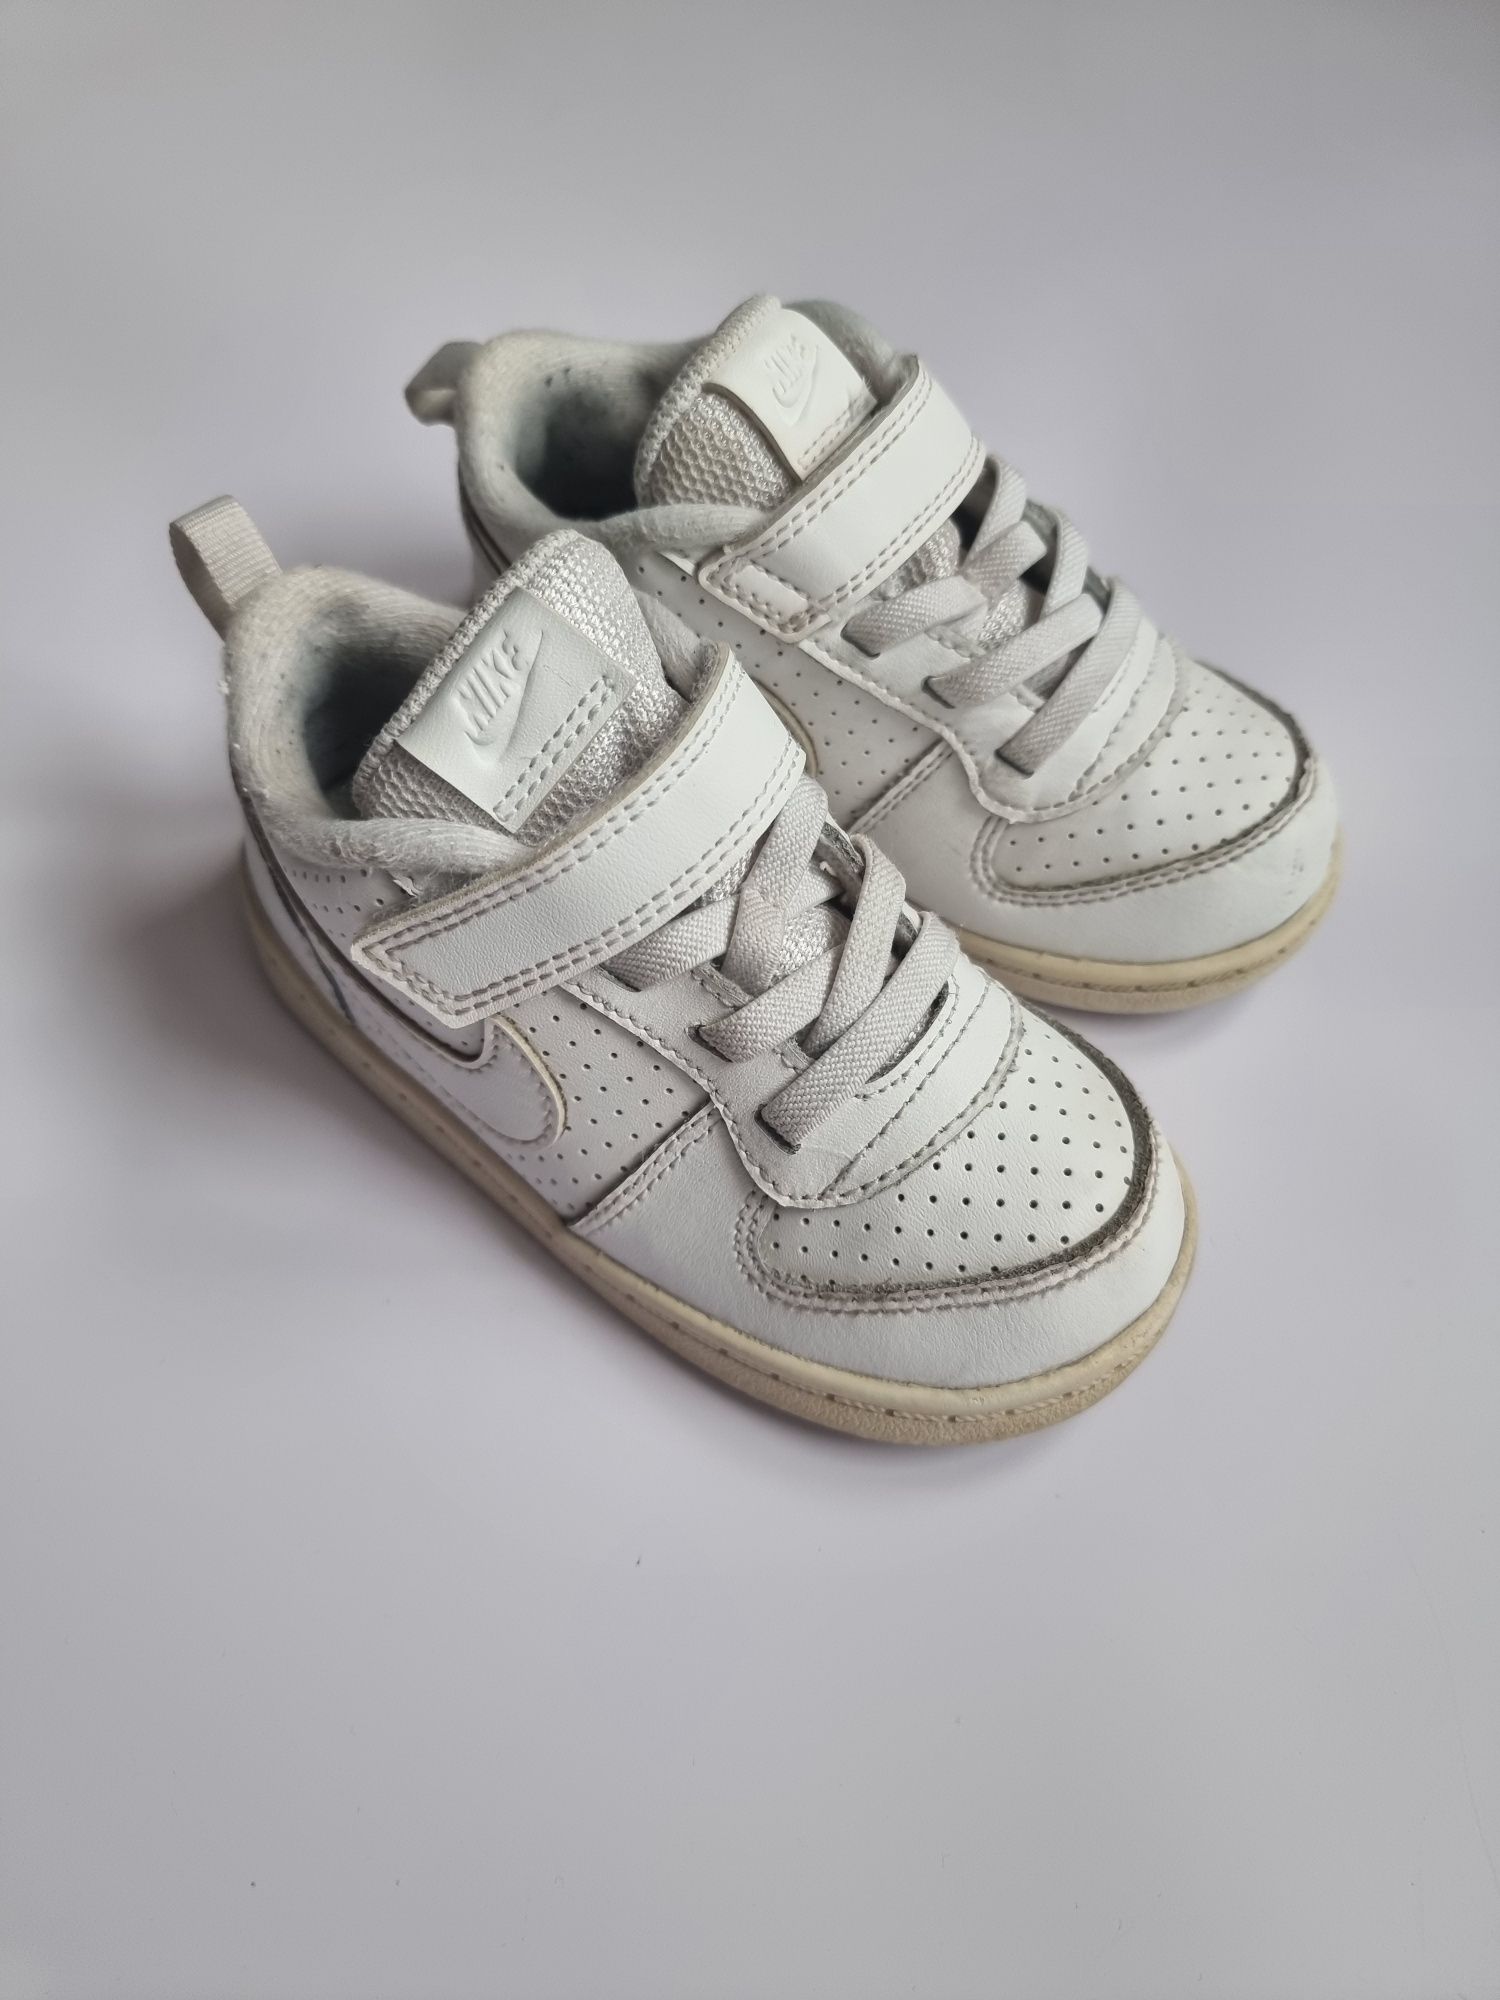 Buty adidasy białe Nike zapinane na rzepy rozmiar 25 buty dziecięce